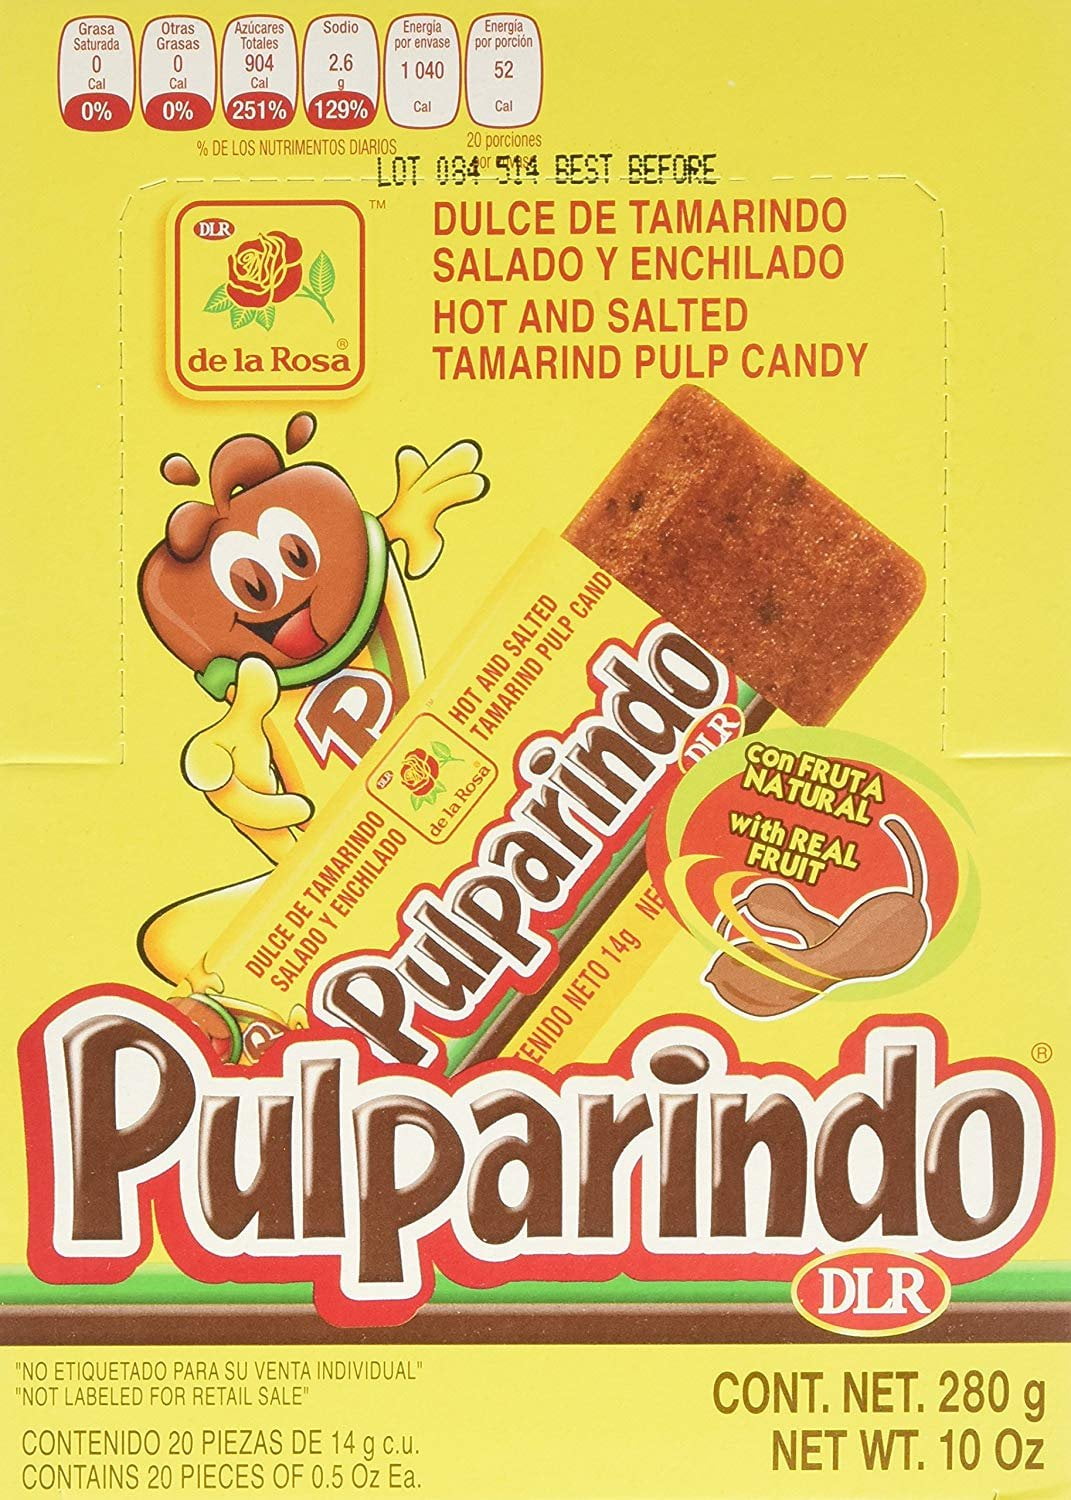 Mexican Candy De La Rosa Tamarind Candy Bar Pulparindo Original Piece Pack Walmart Com Walmart Com